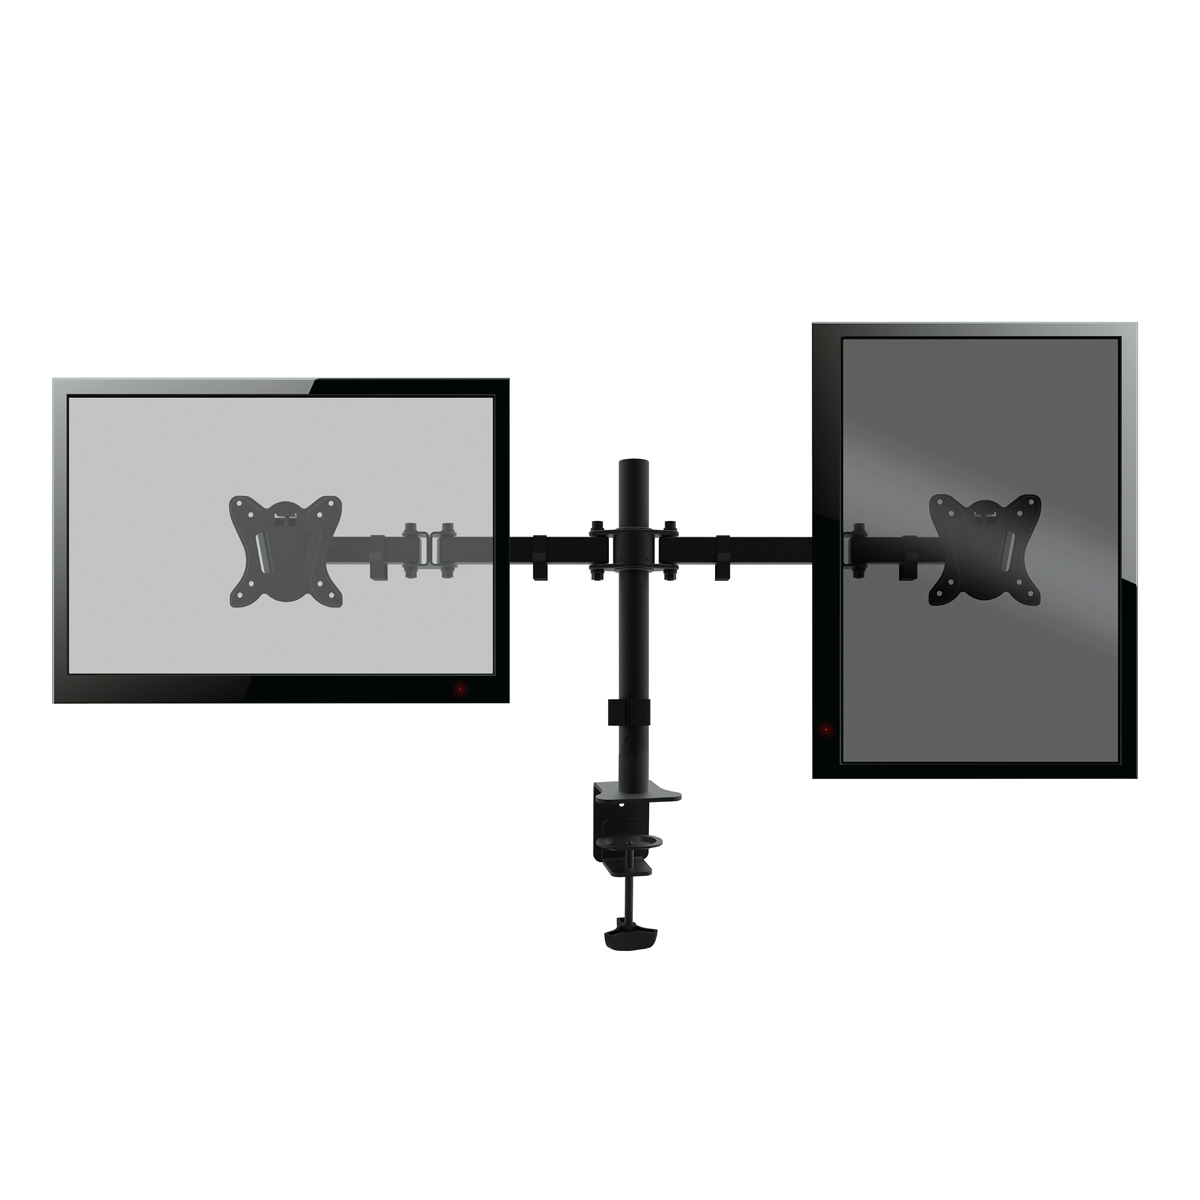 Omega Dubbele monitor arm voor bureaus en tafels, voor twee 13 tot 27 inch schermen, Vesa standaard 75 / 100, rotate / tilt, zwart